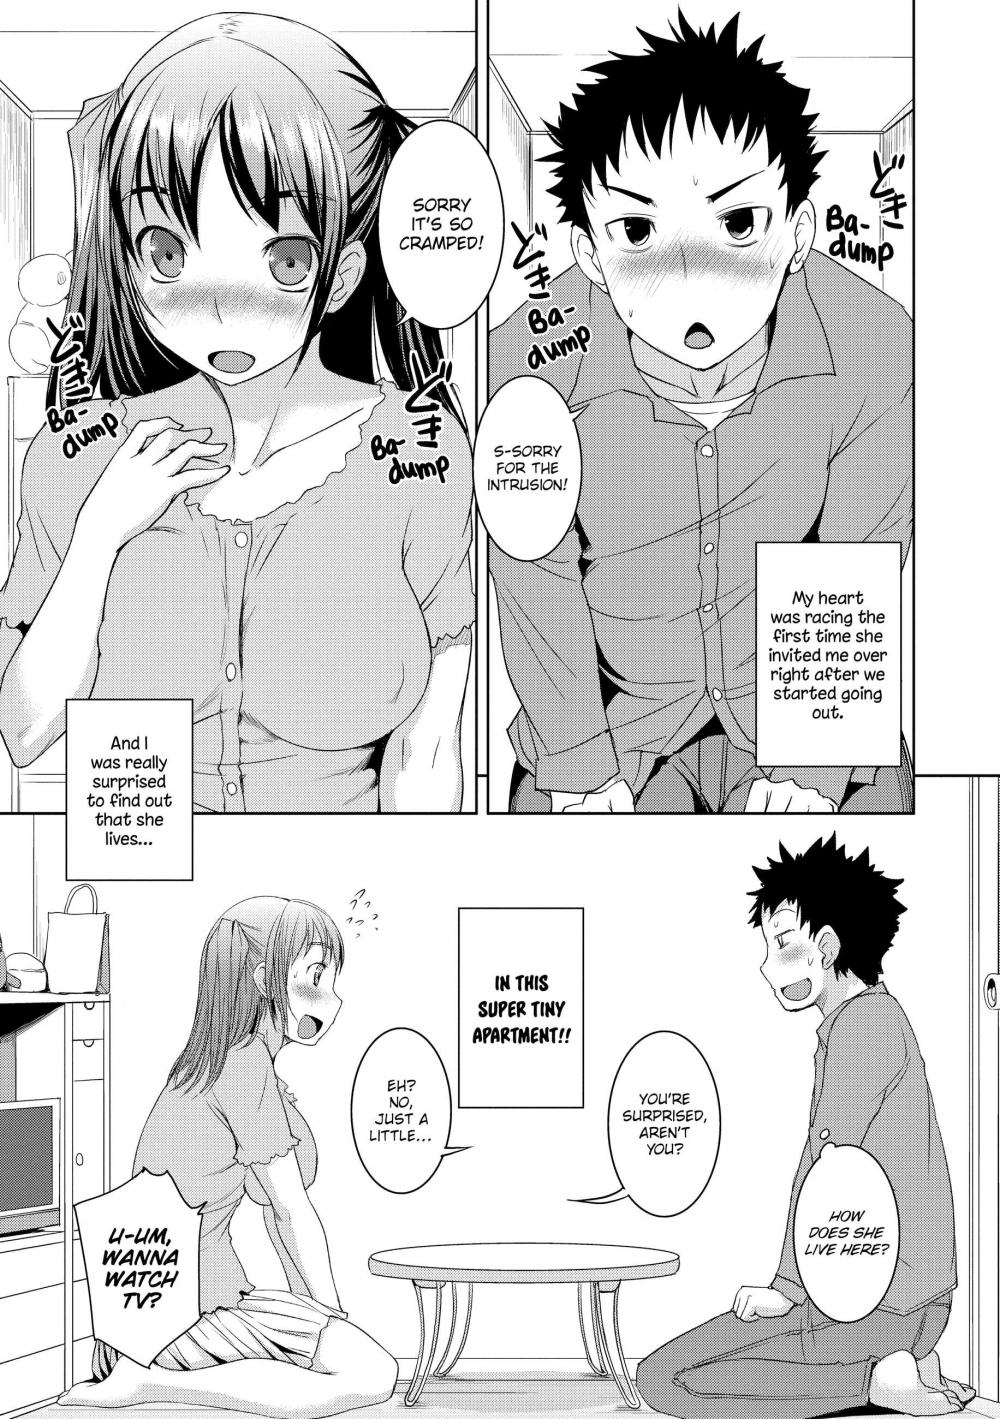 Peachy-Butt Girls-Chapter 4 - tight tight girl-Hentai Manga Hentai ...